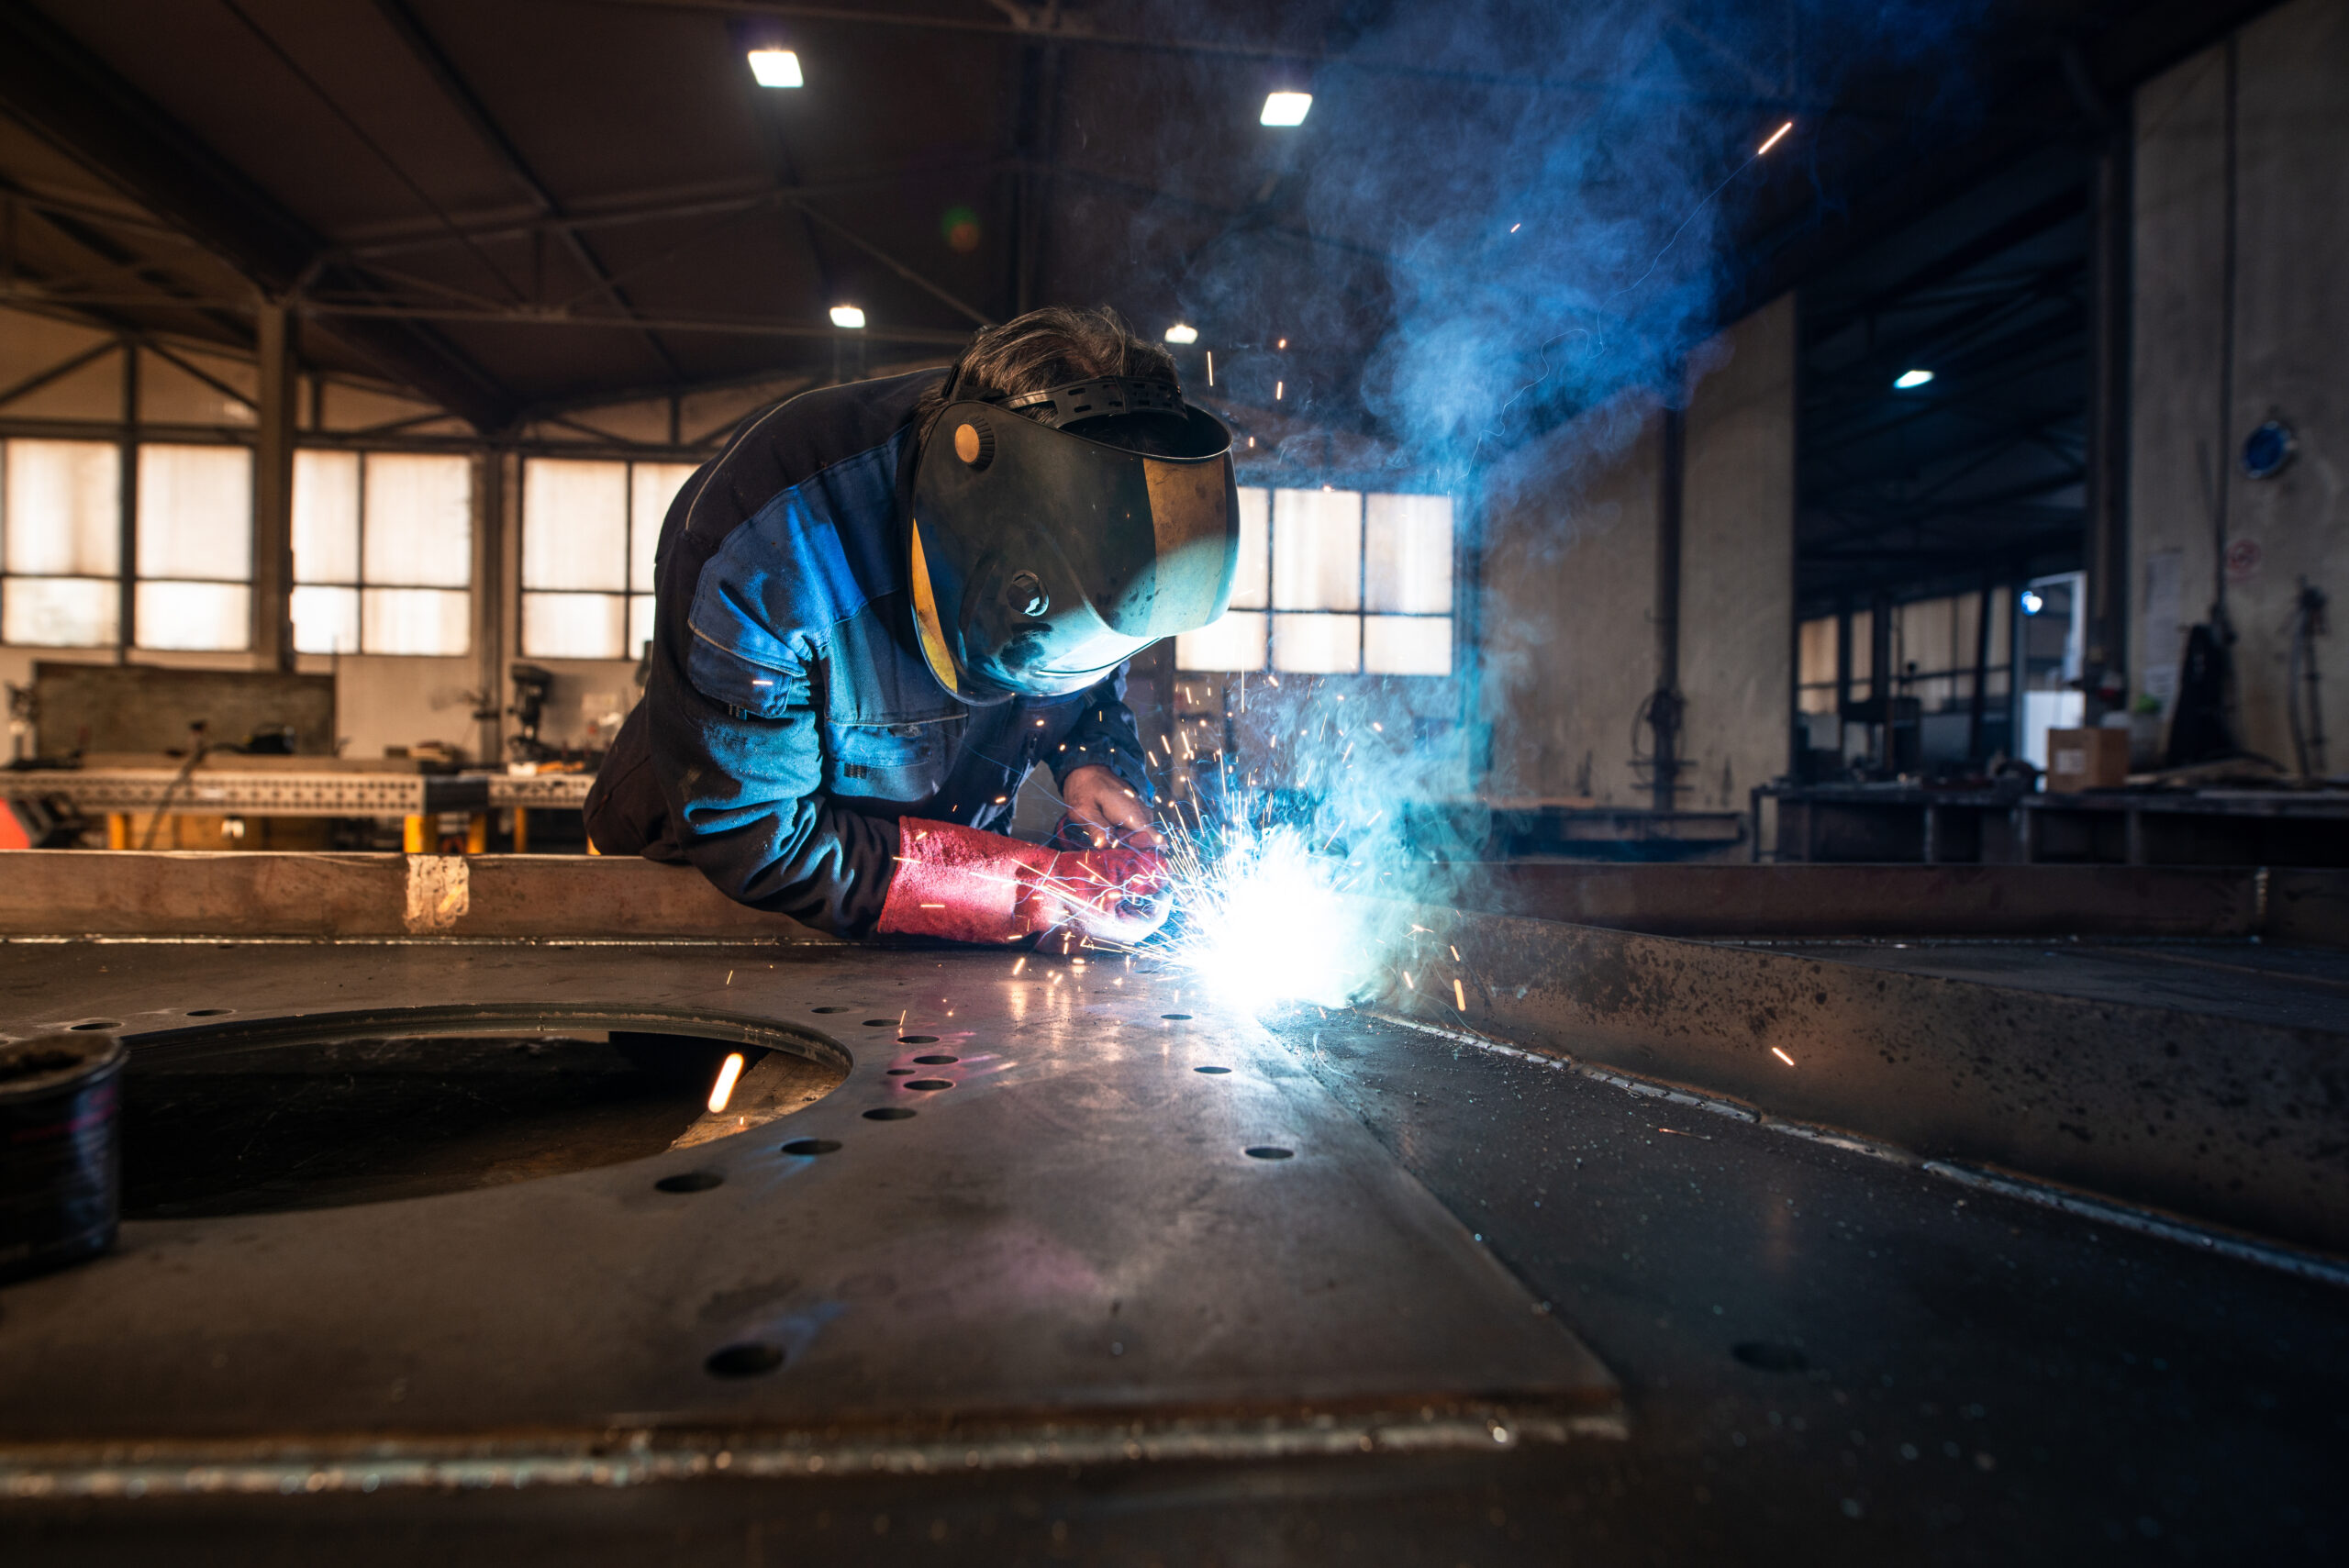 Professional industrial welder welding metal parts in metalworking factory.